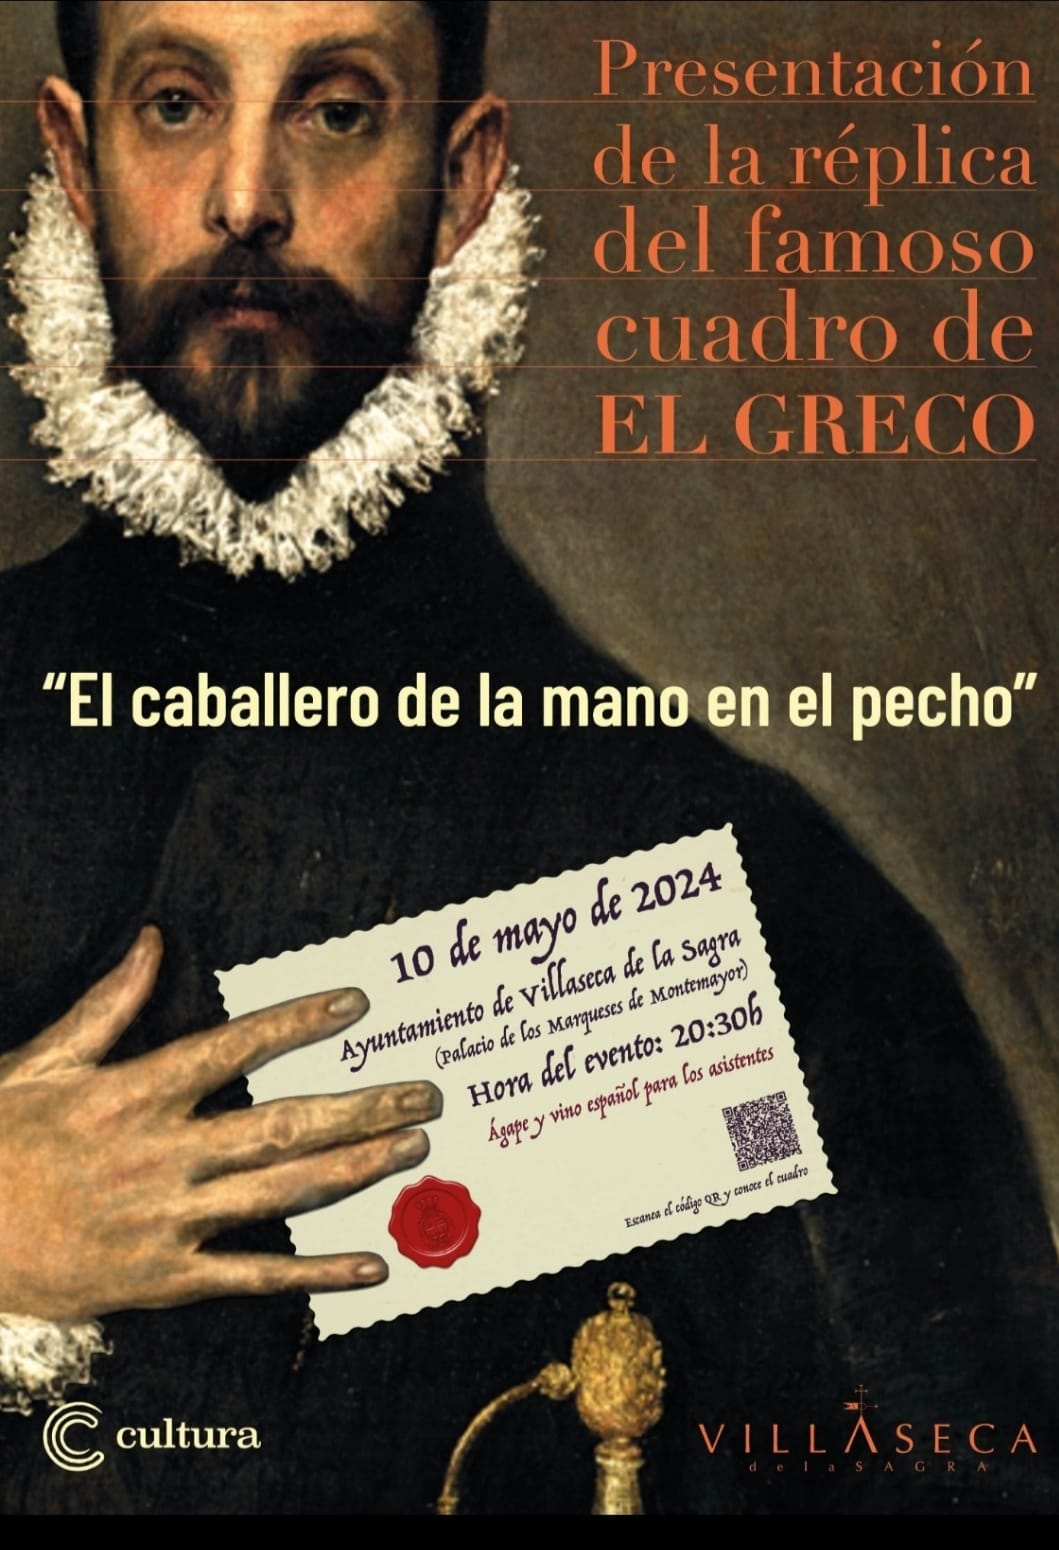 Presentación réplica del "El Caballero de la mano en el pecho" de el Greco